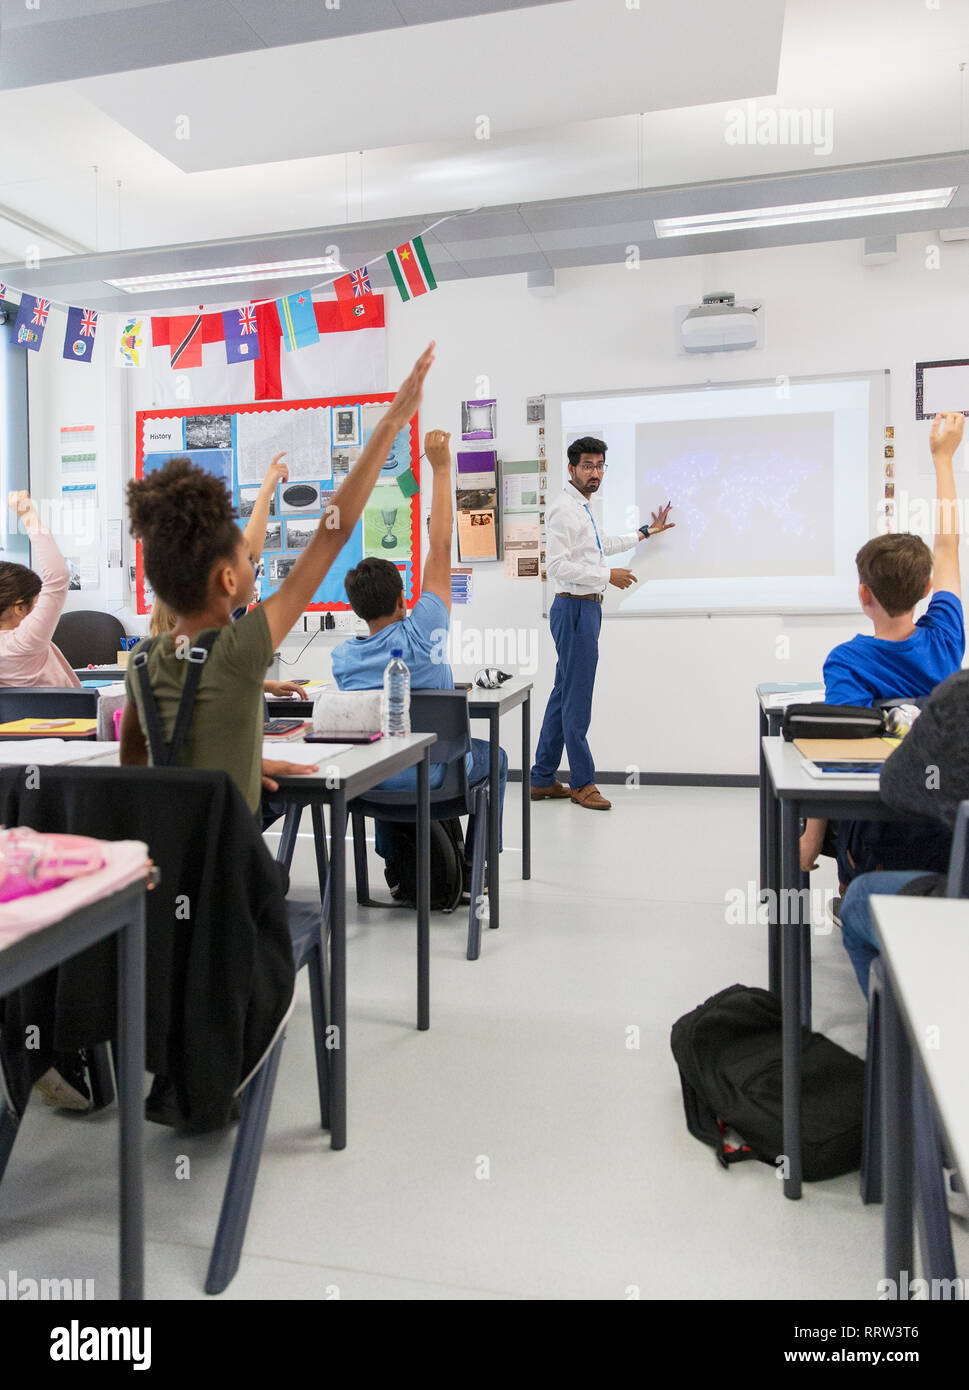 Lehrer führender Lektion auf Leinwand im Klassenzimmer Stockfoto